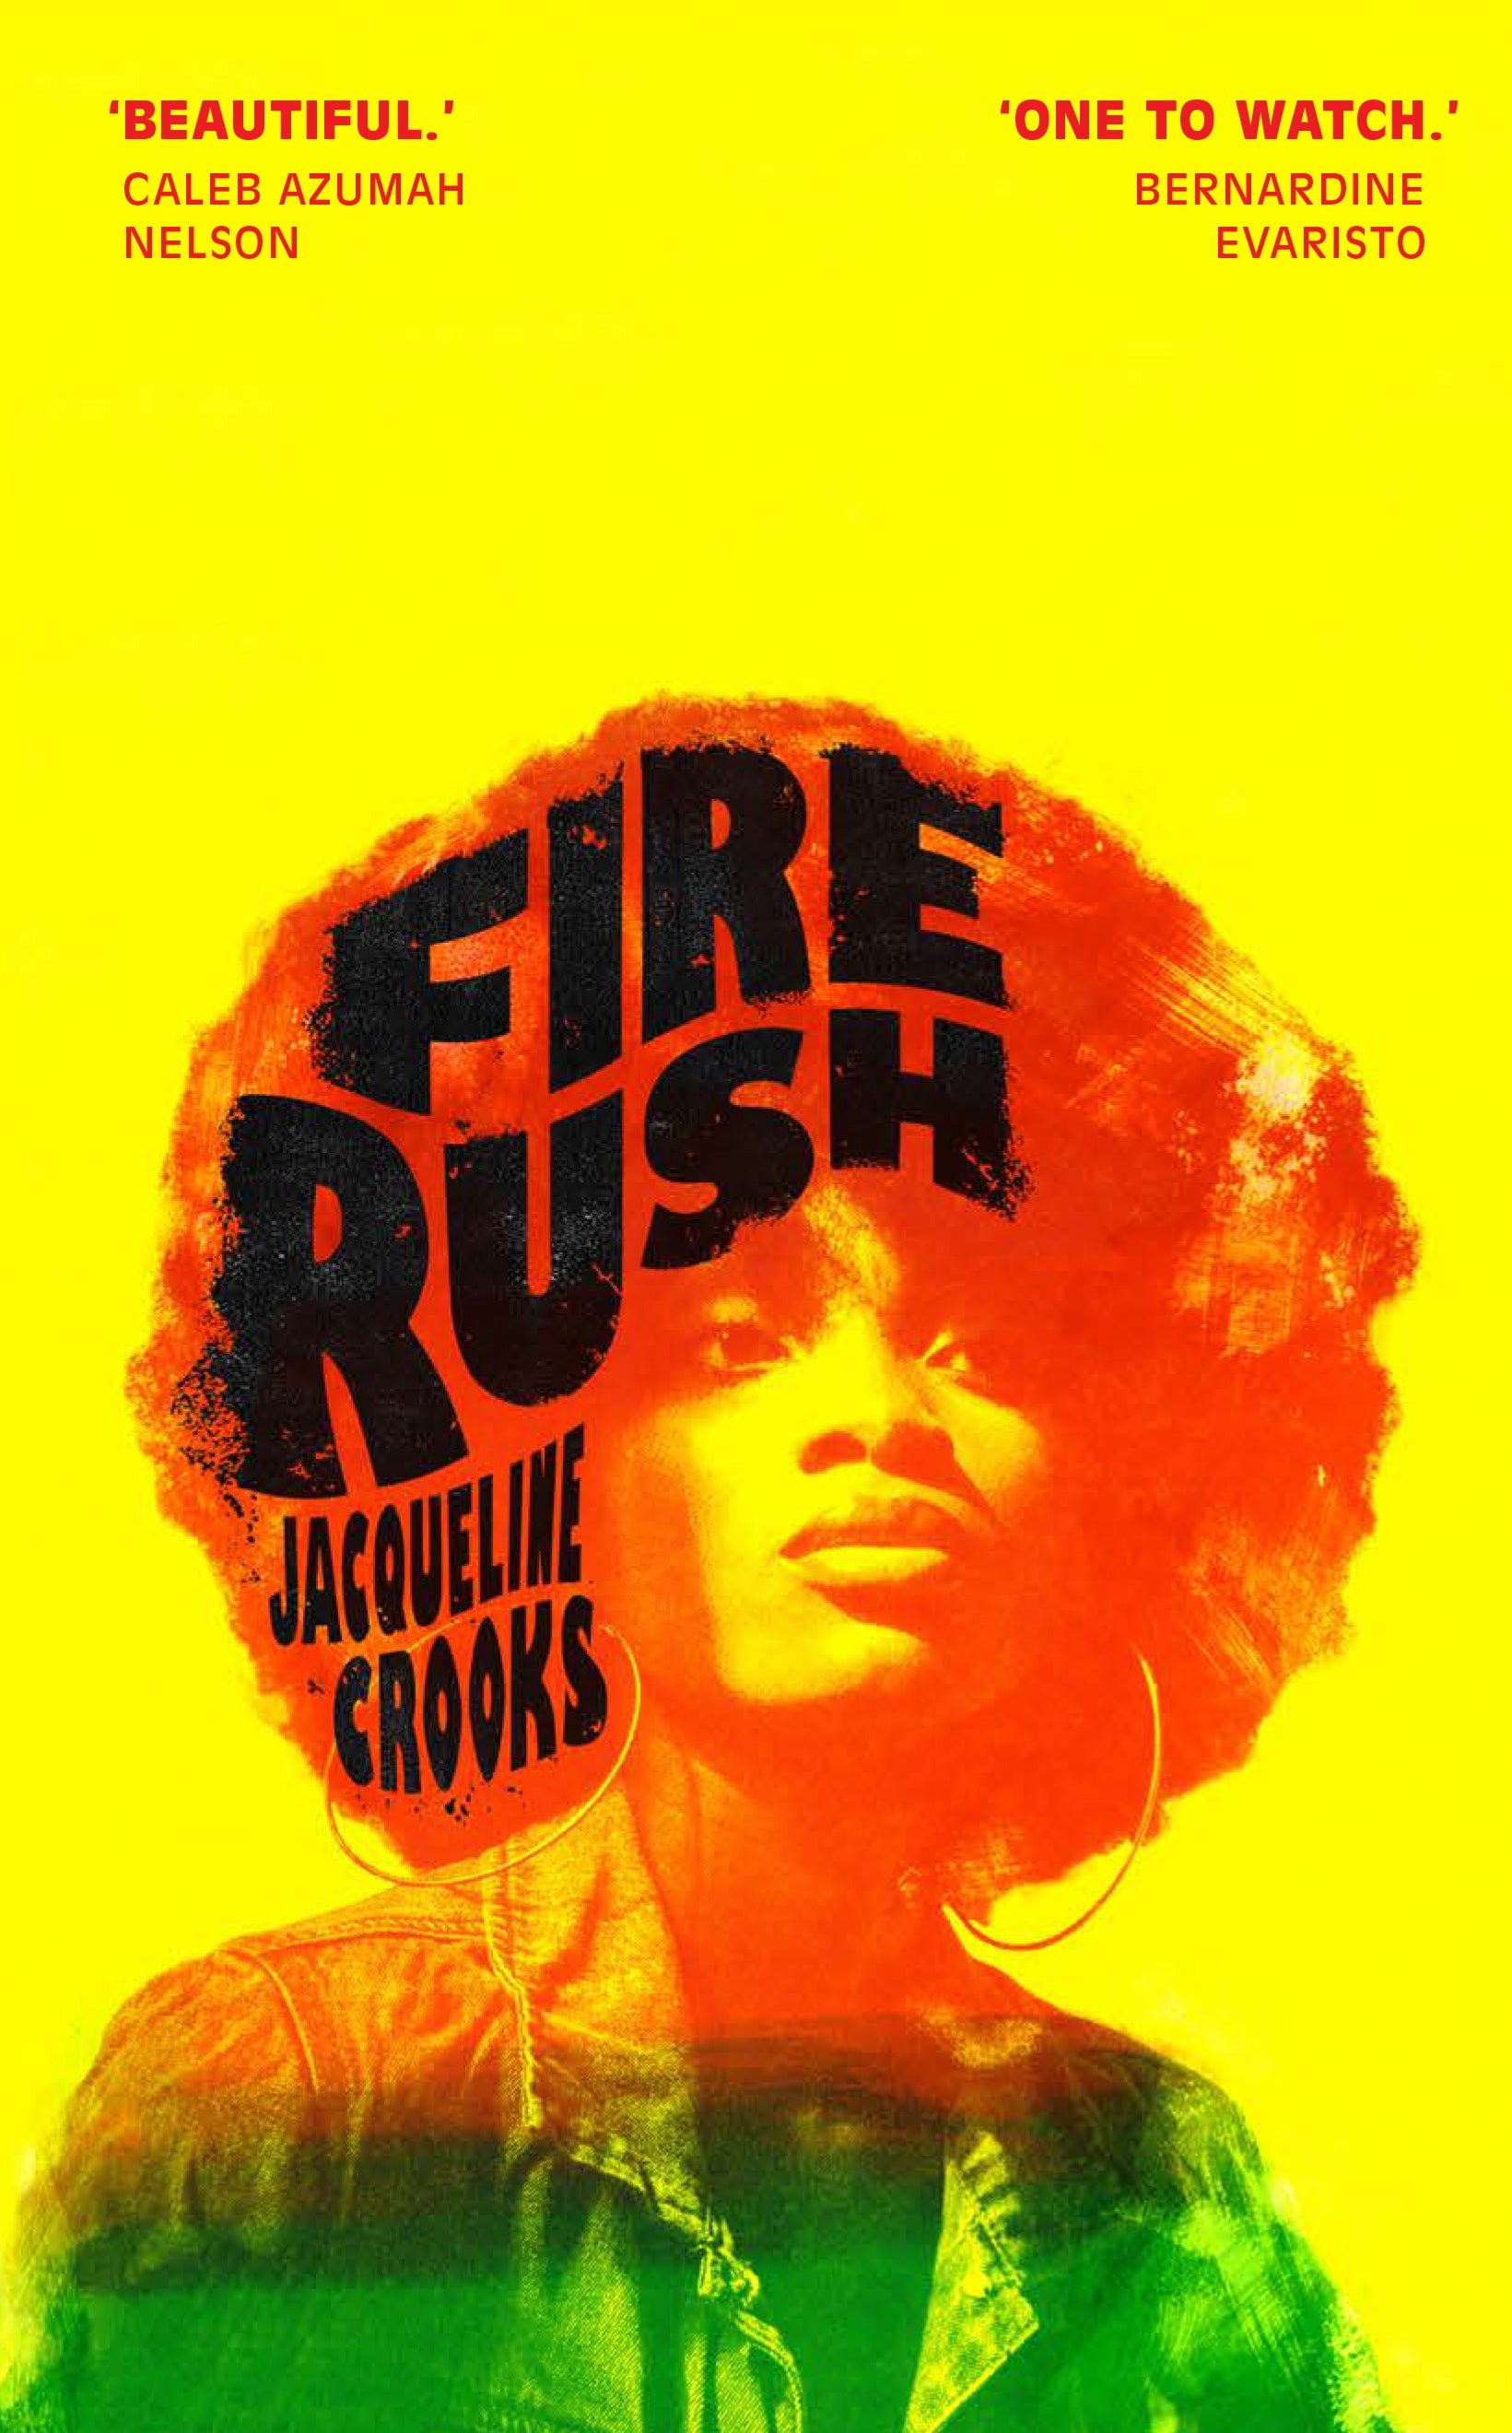 Jacqueline crooks Author Fire Rush 